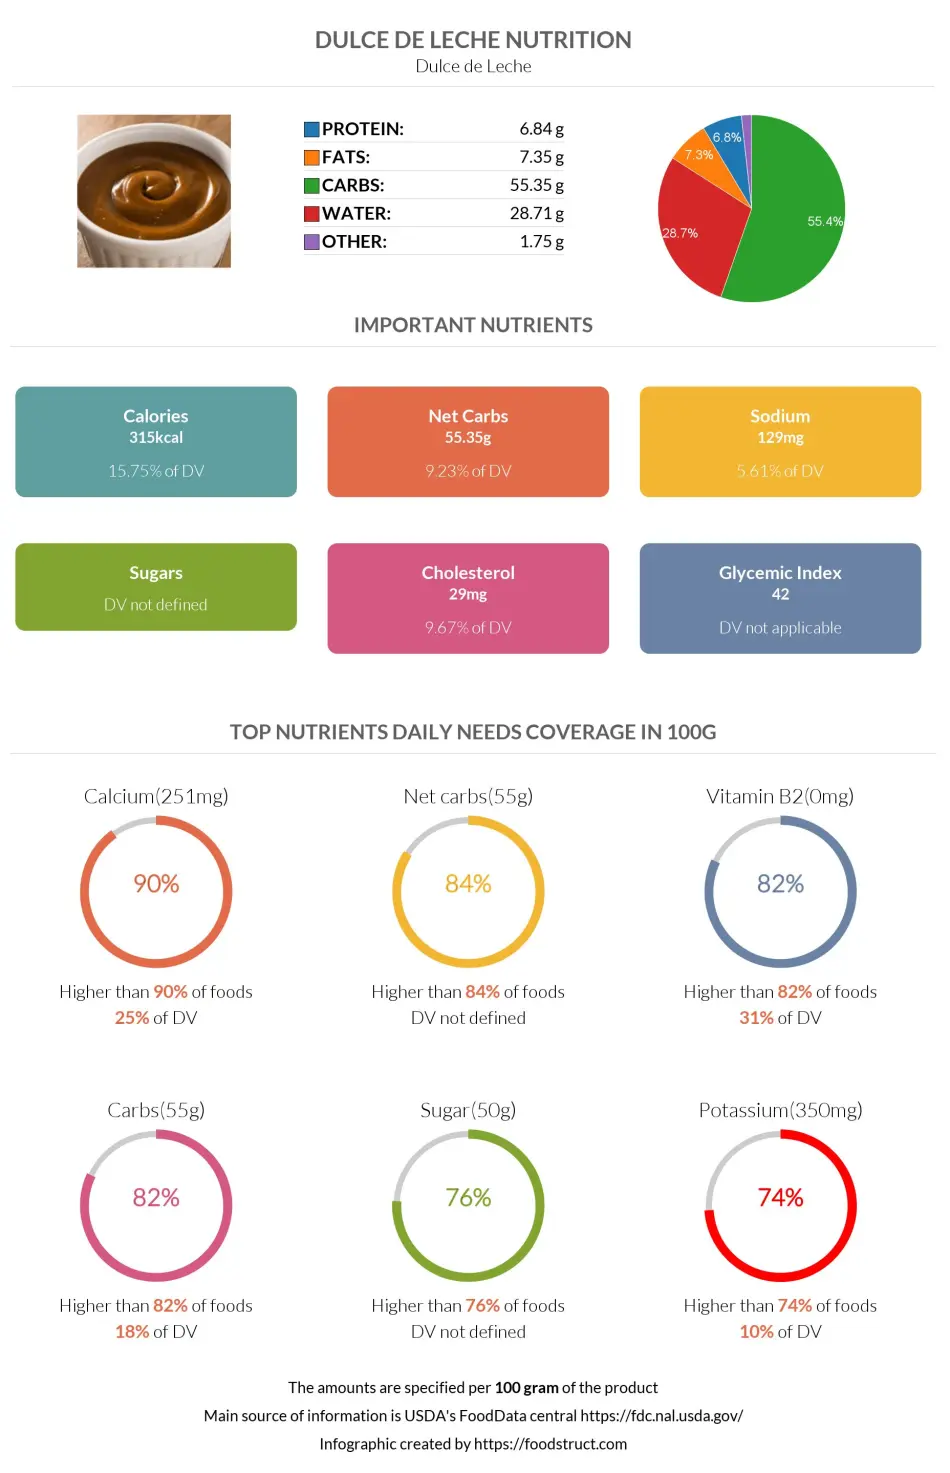 Dulce de Leche nutrition infographic